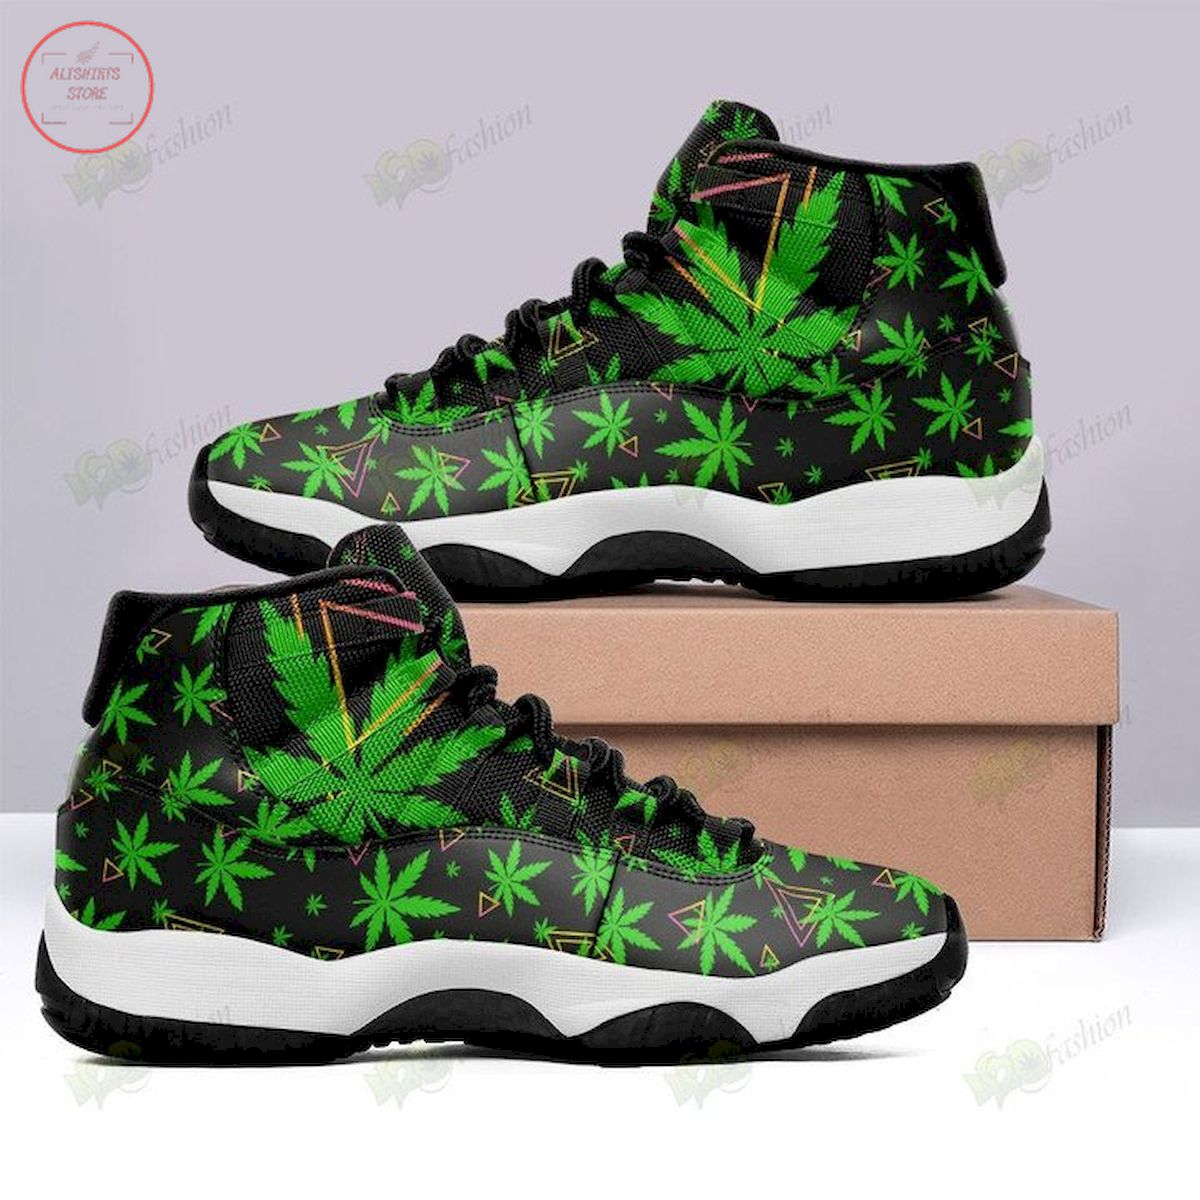 Cannabis Weed 420 Air Jordan 11 Sneaker Shoes